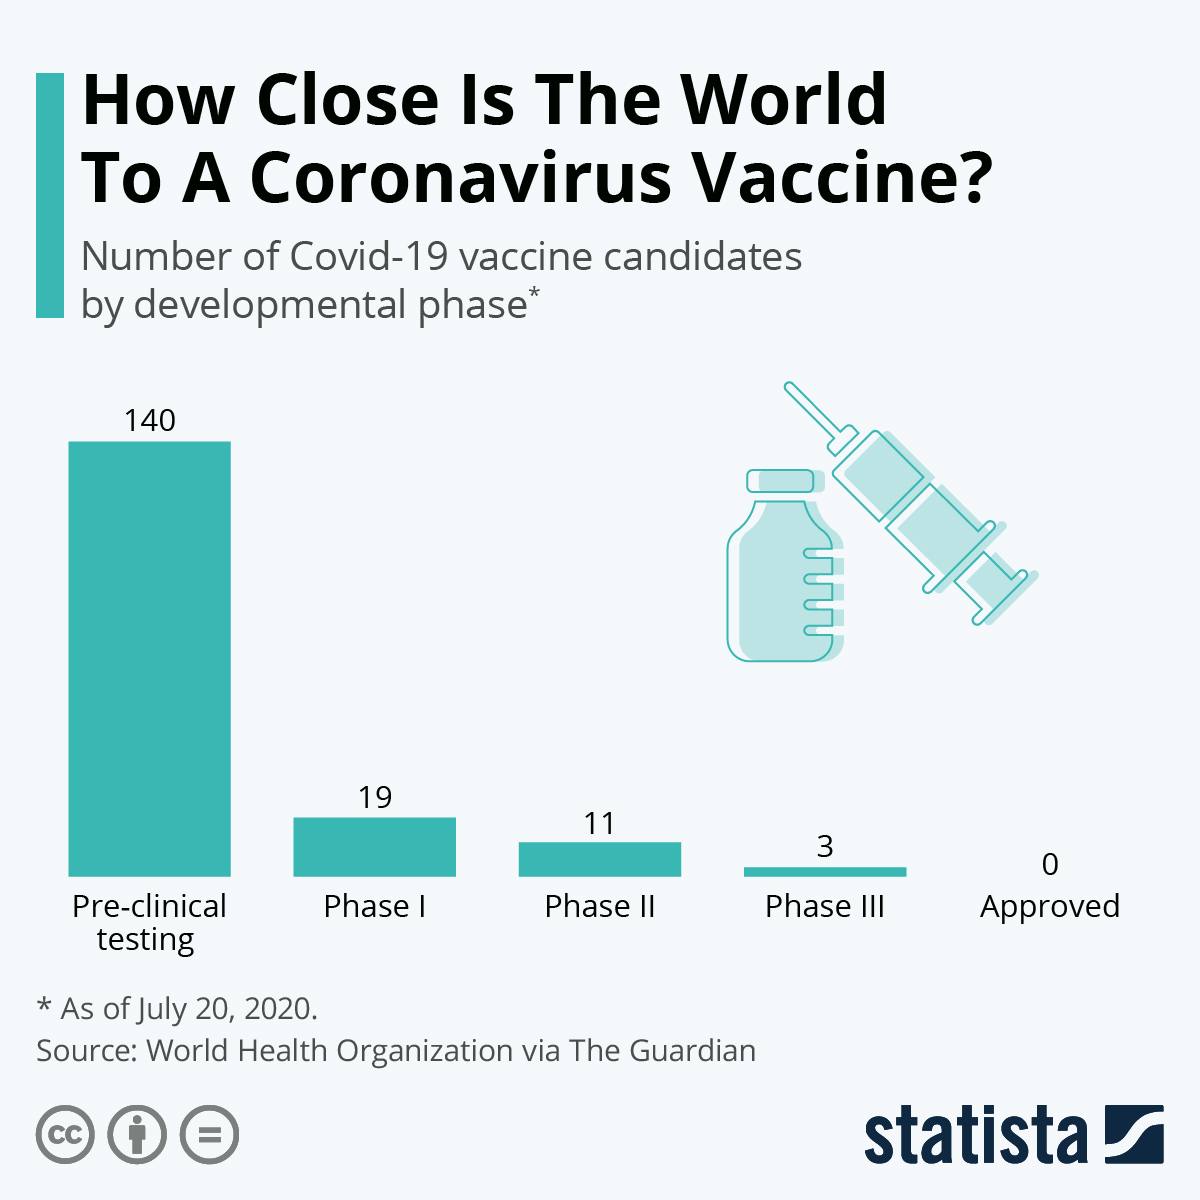 Cât de aproape este lumea de un vaccin împotriva coronavirusului?